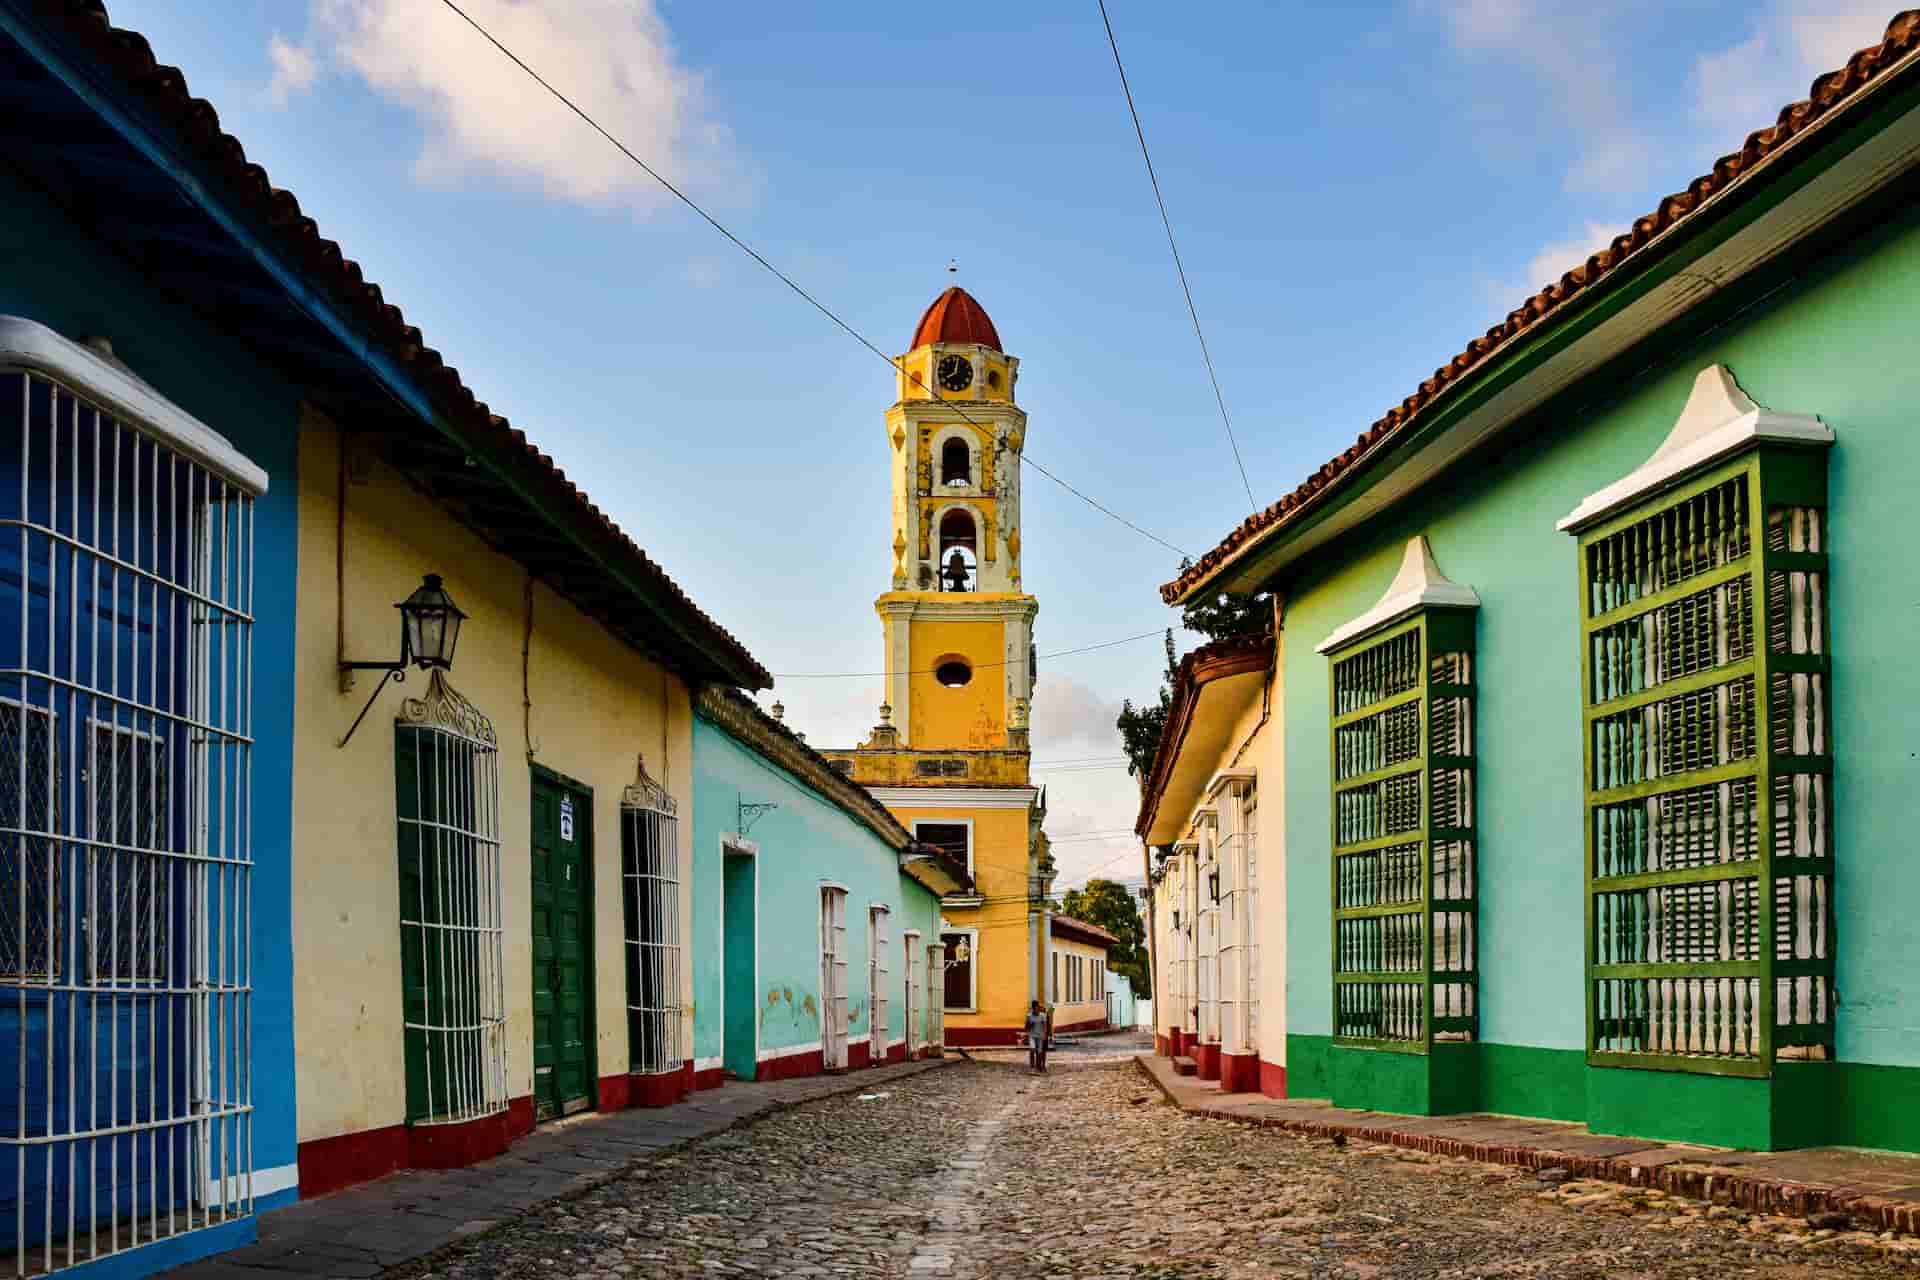 Trinidad - Impresindible en un viaje a Cuba